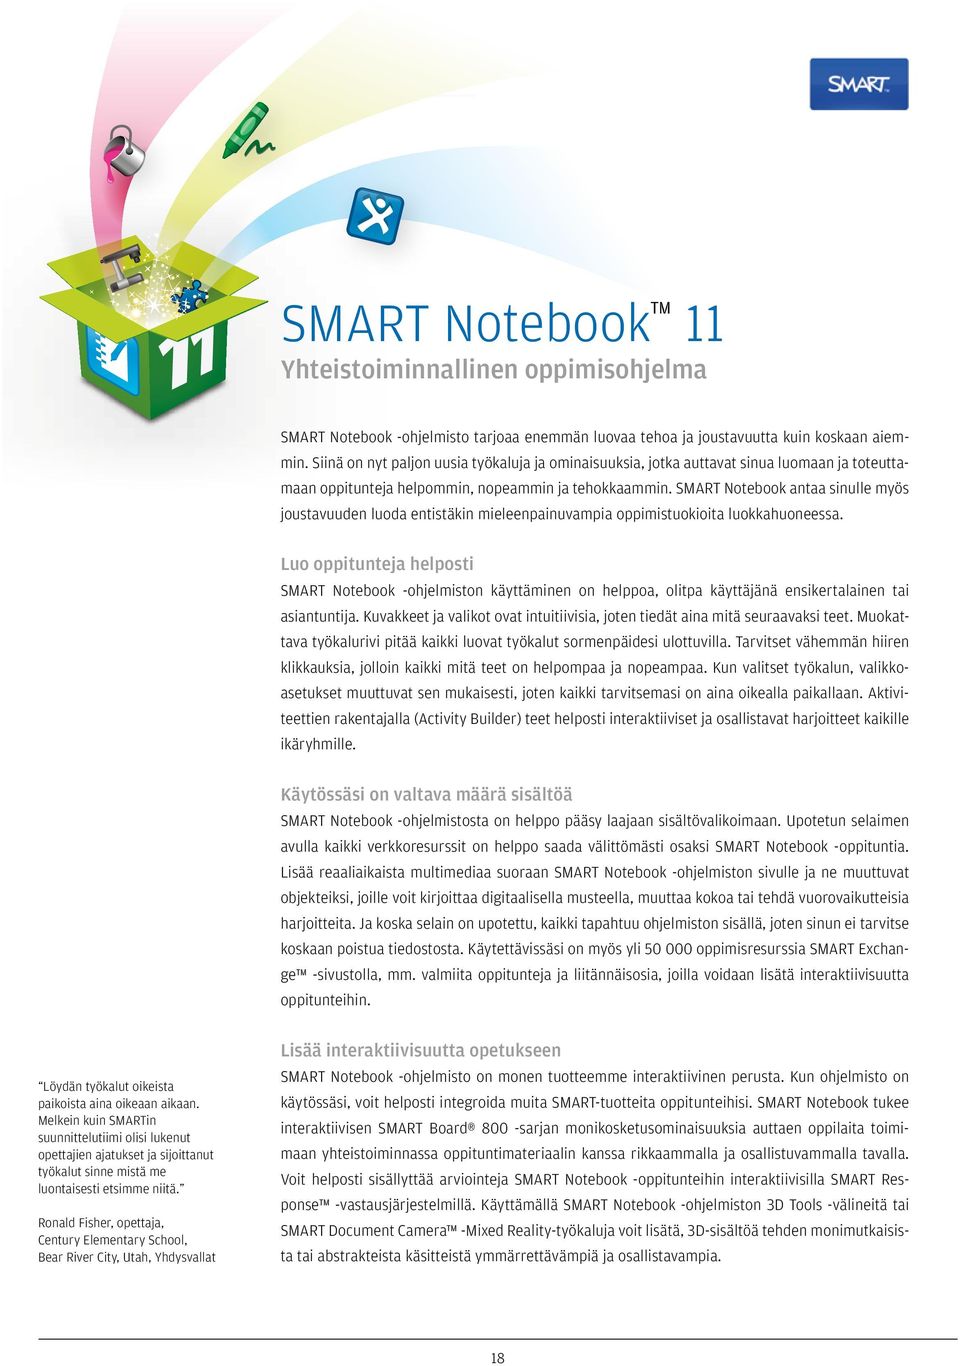 SMART Notebook antaa sinulle myös joustavuuden luoda entistäkin mieleenpainuvampia oppimistuokioita luokkahuoneessa.